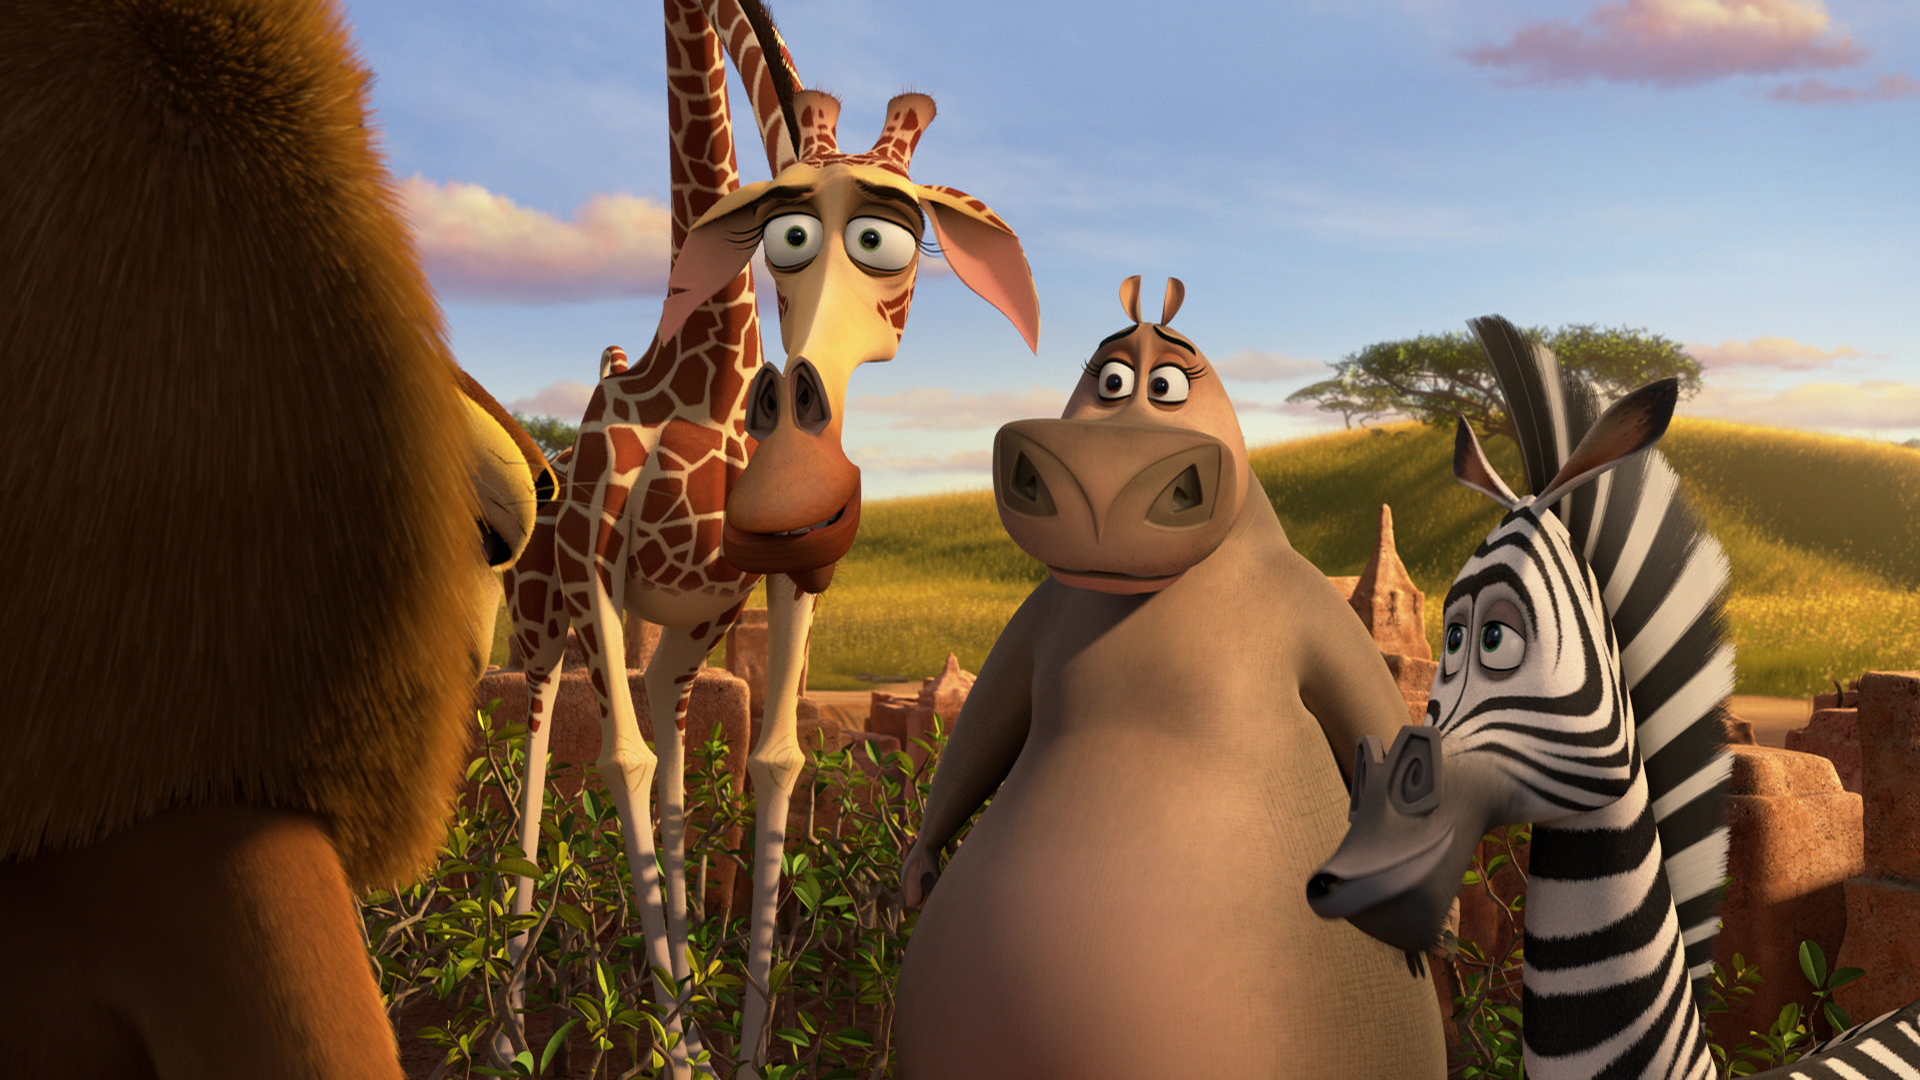 Мадагаскар мультфильм 2005